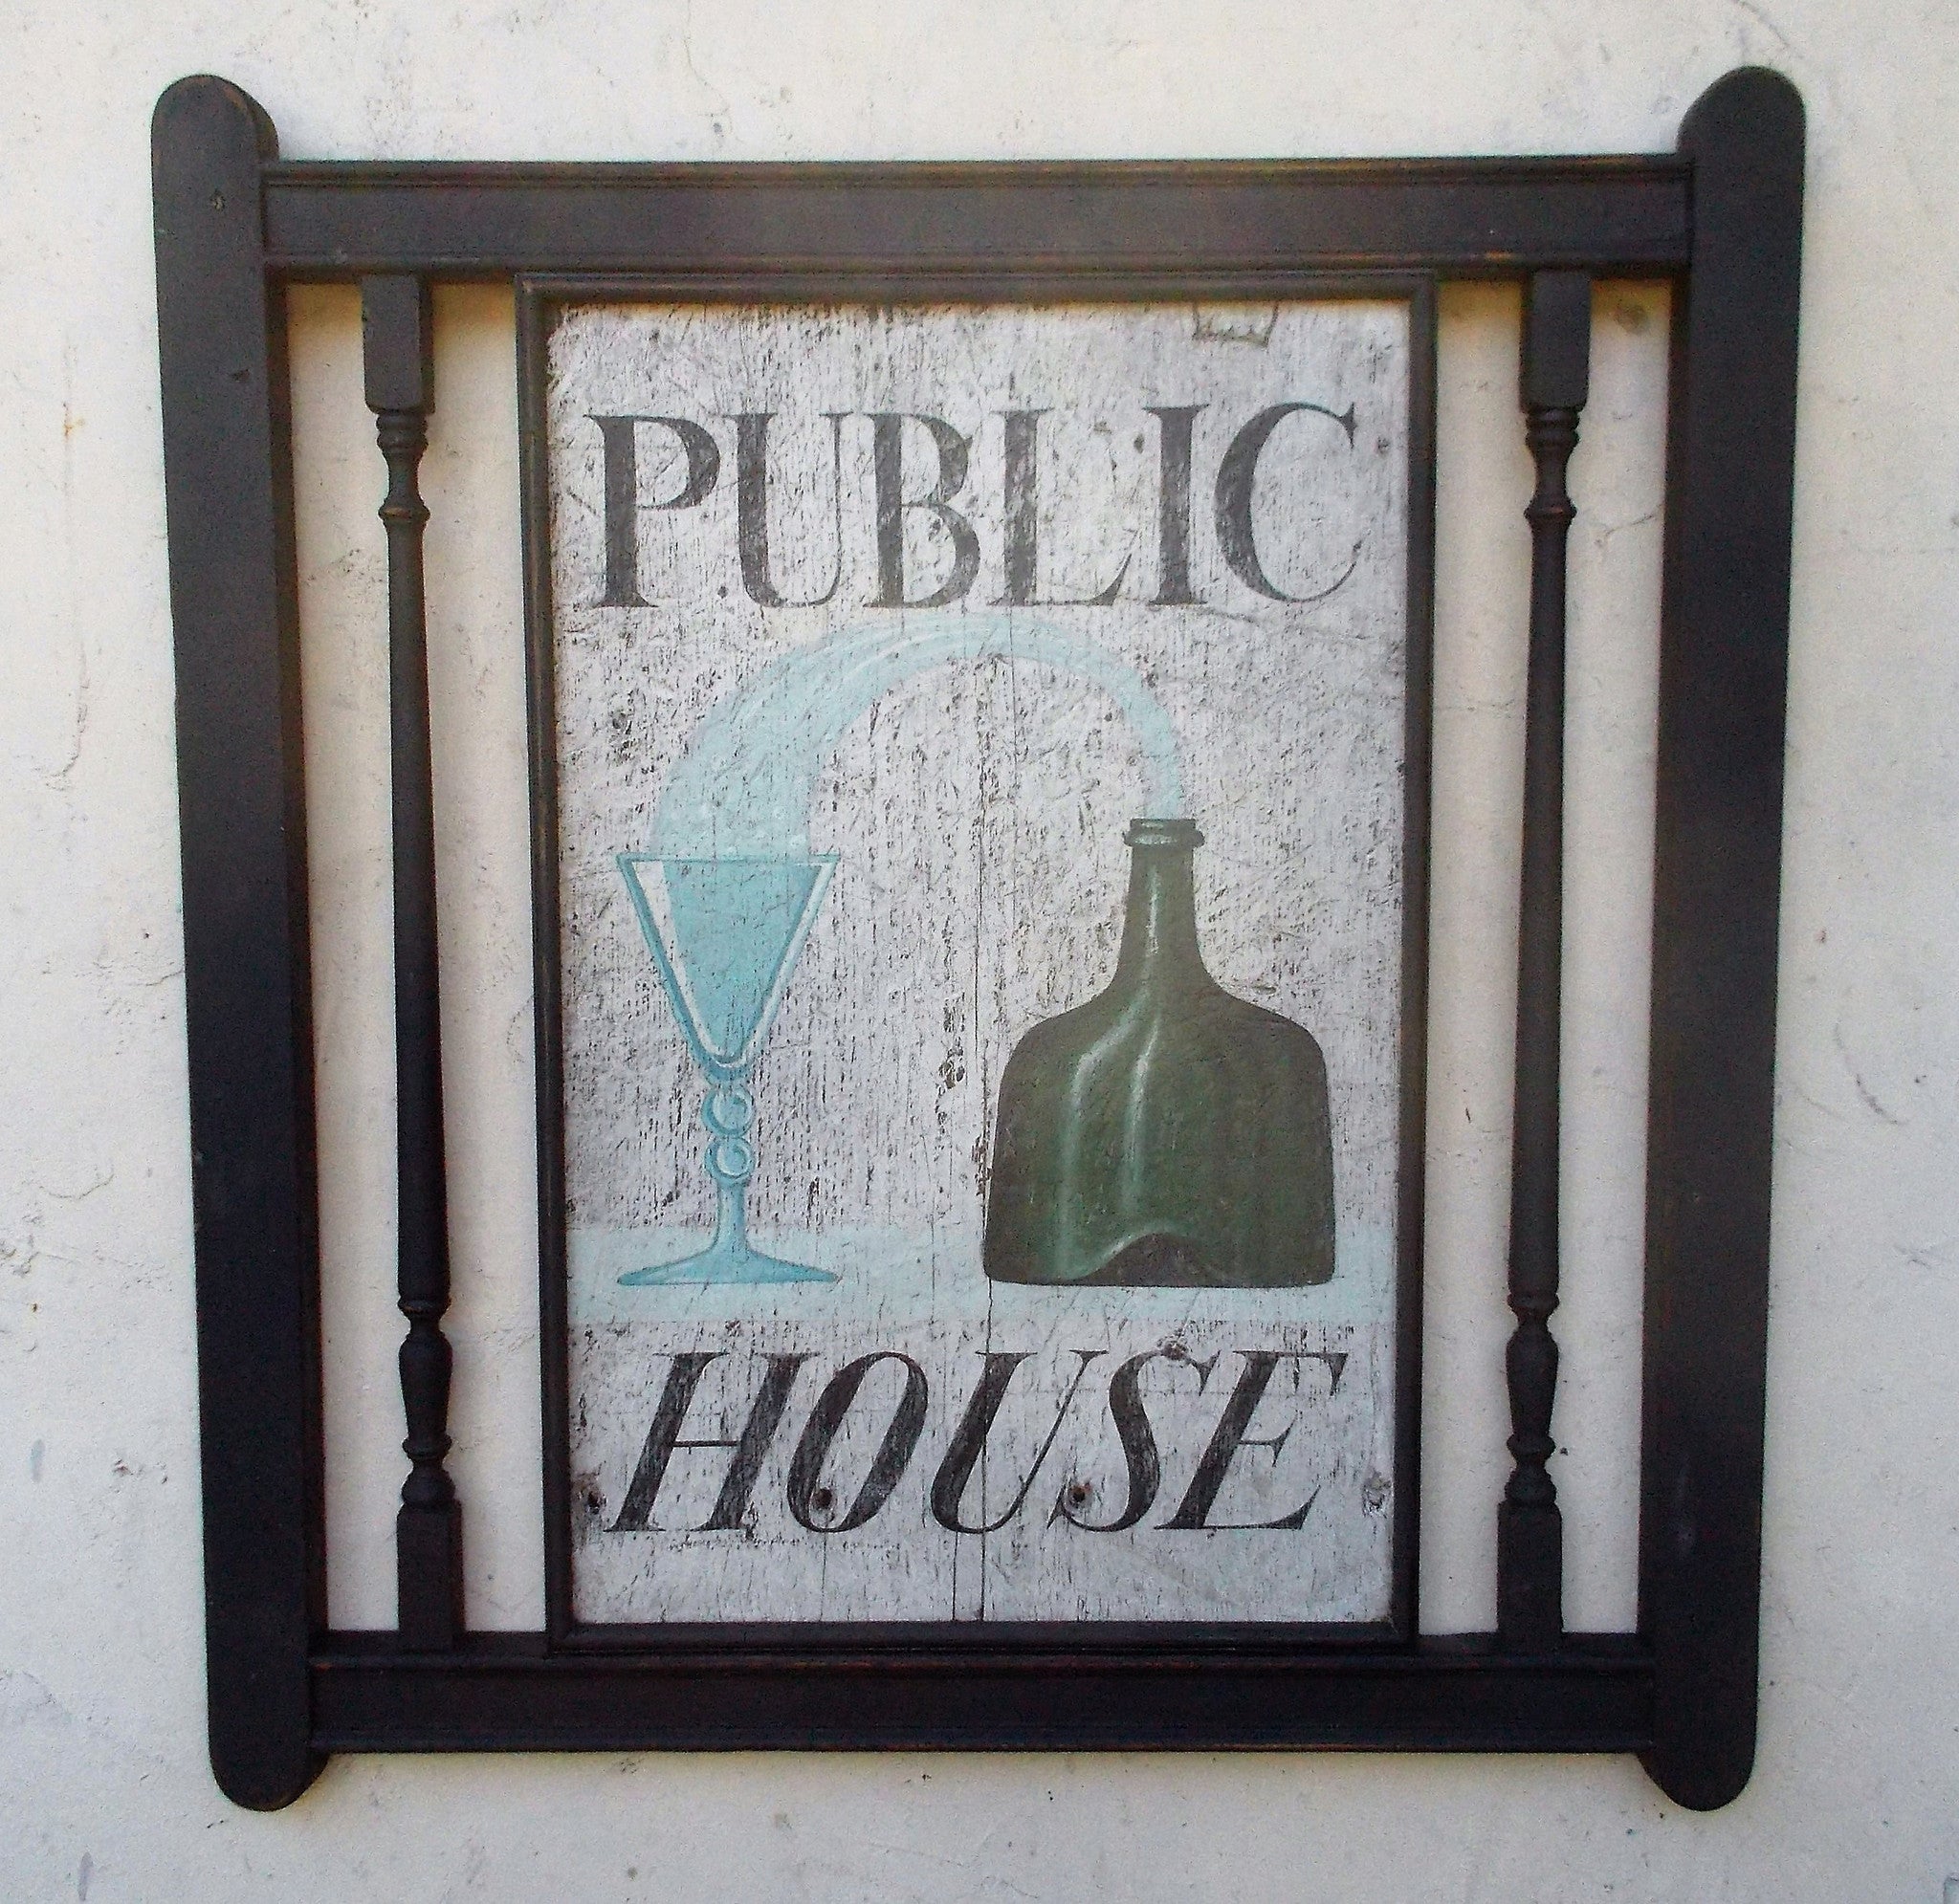 Public House